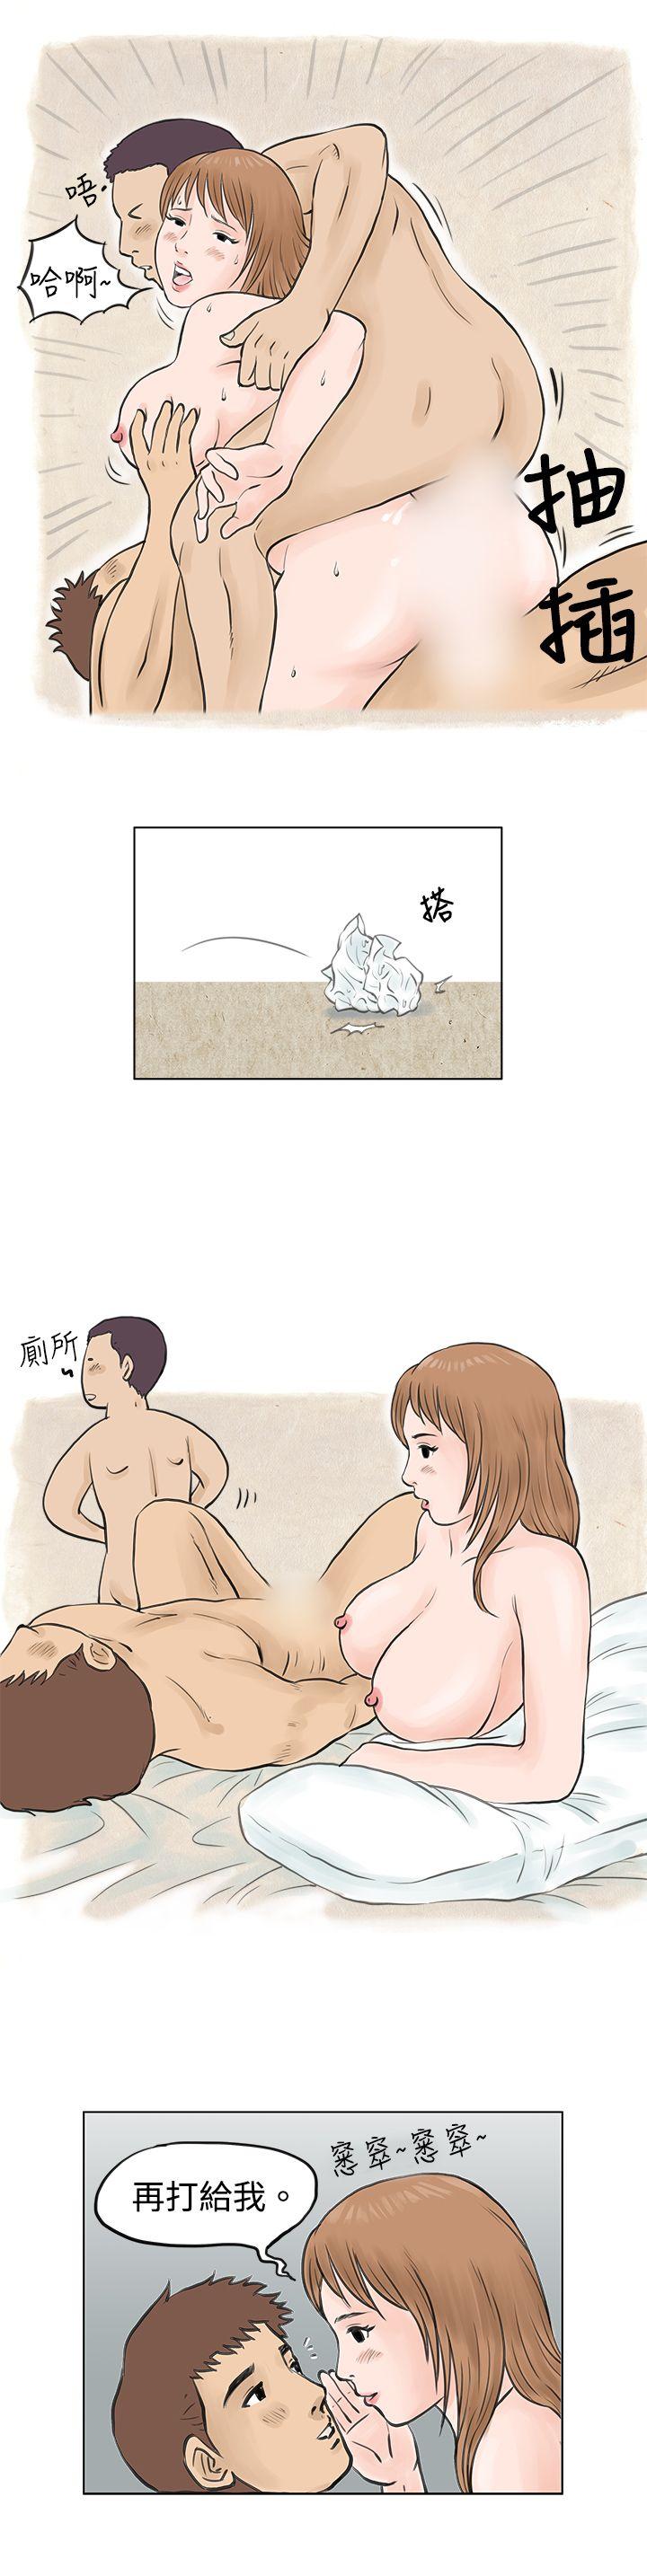 秘密Story  男友说要叫应召男(下) 漫画图片9.jpg